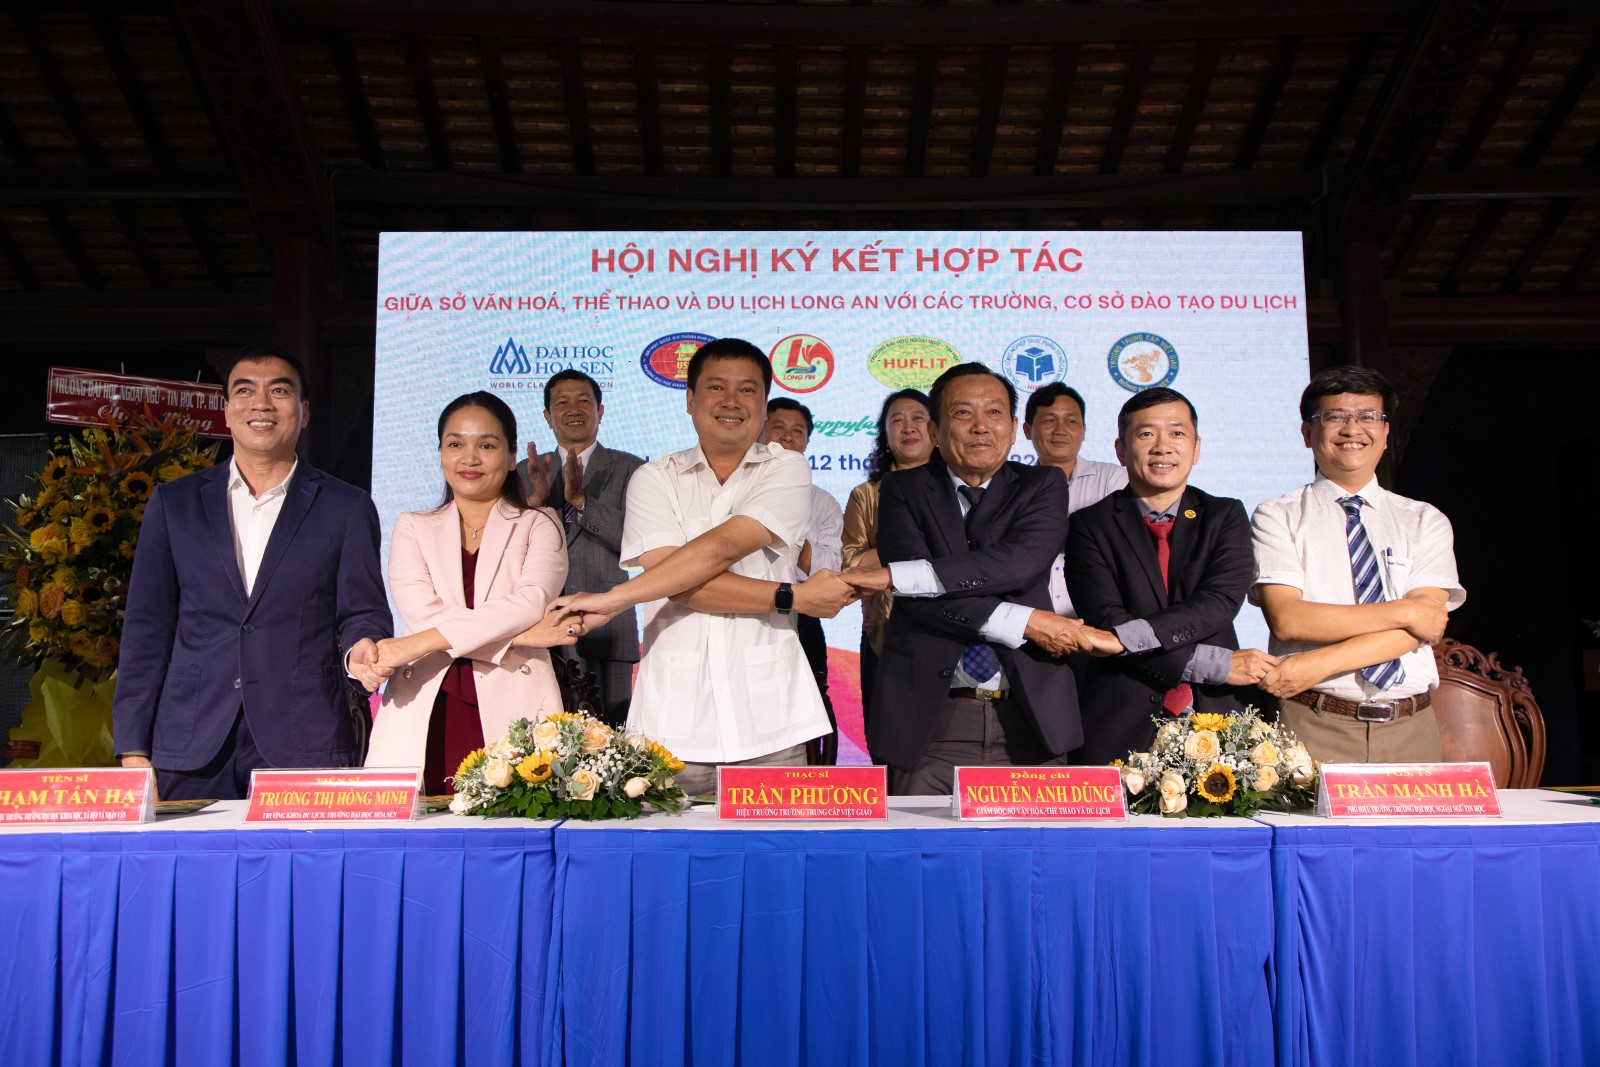 HUFI ký kết hợp tác phát triển du lịch với Sở Văn hóa, Thể thao và Du lịch tỉnh Long An